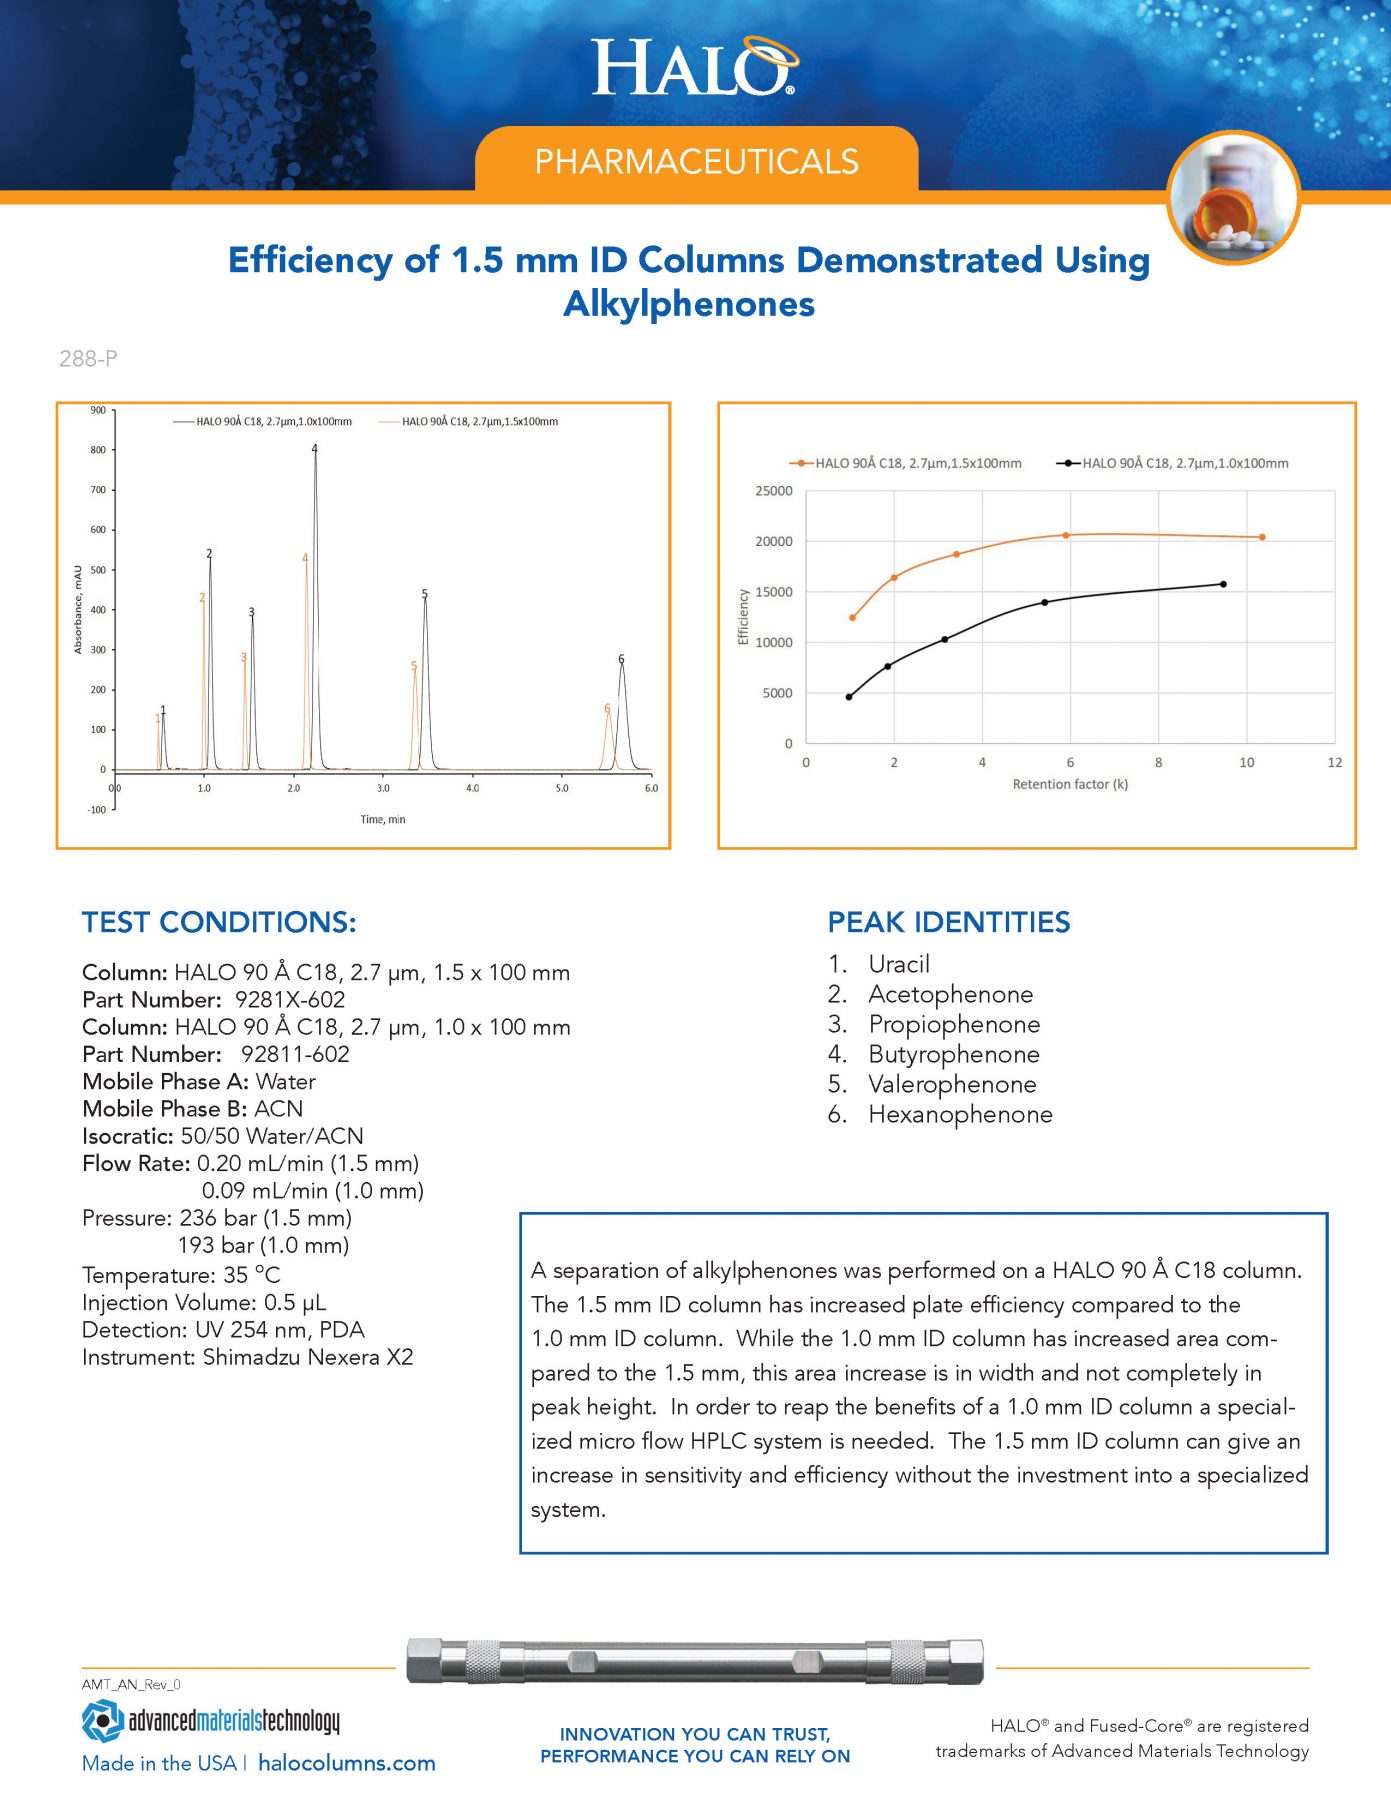 Efficiency Of 1.5 Mm ID Columns